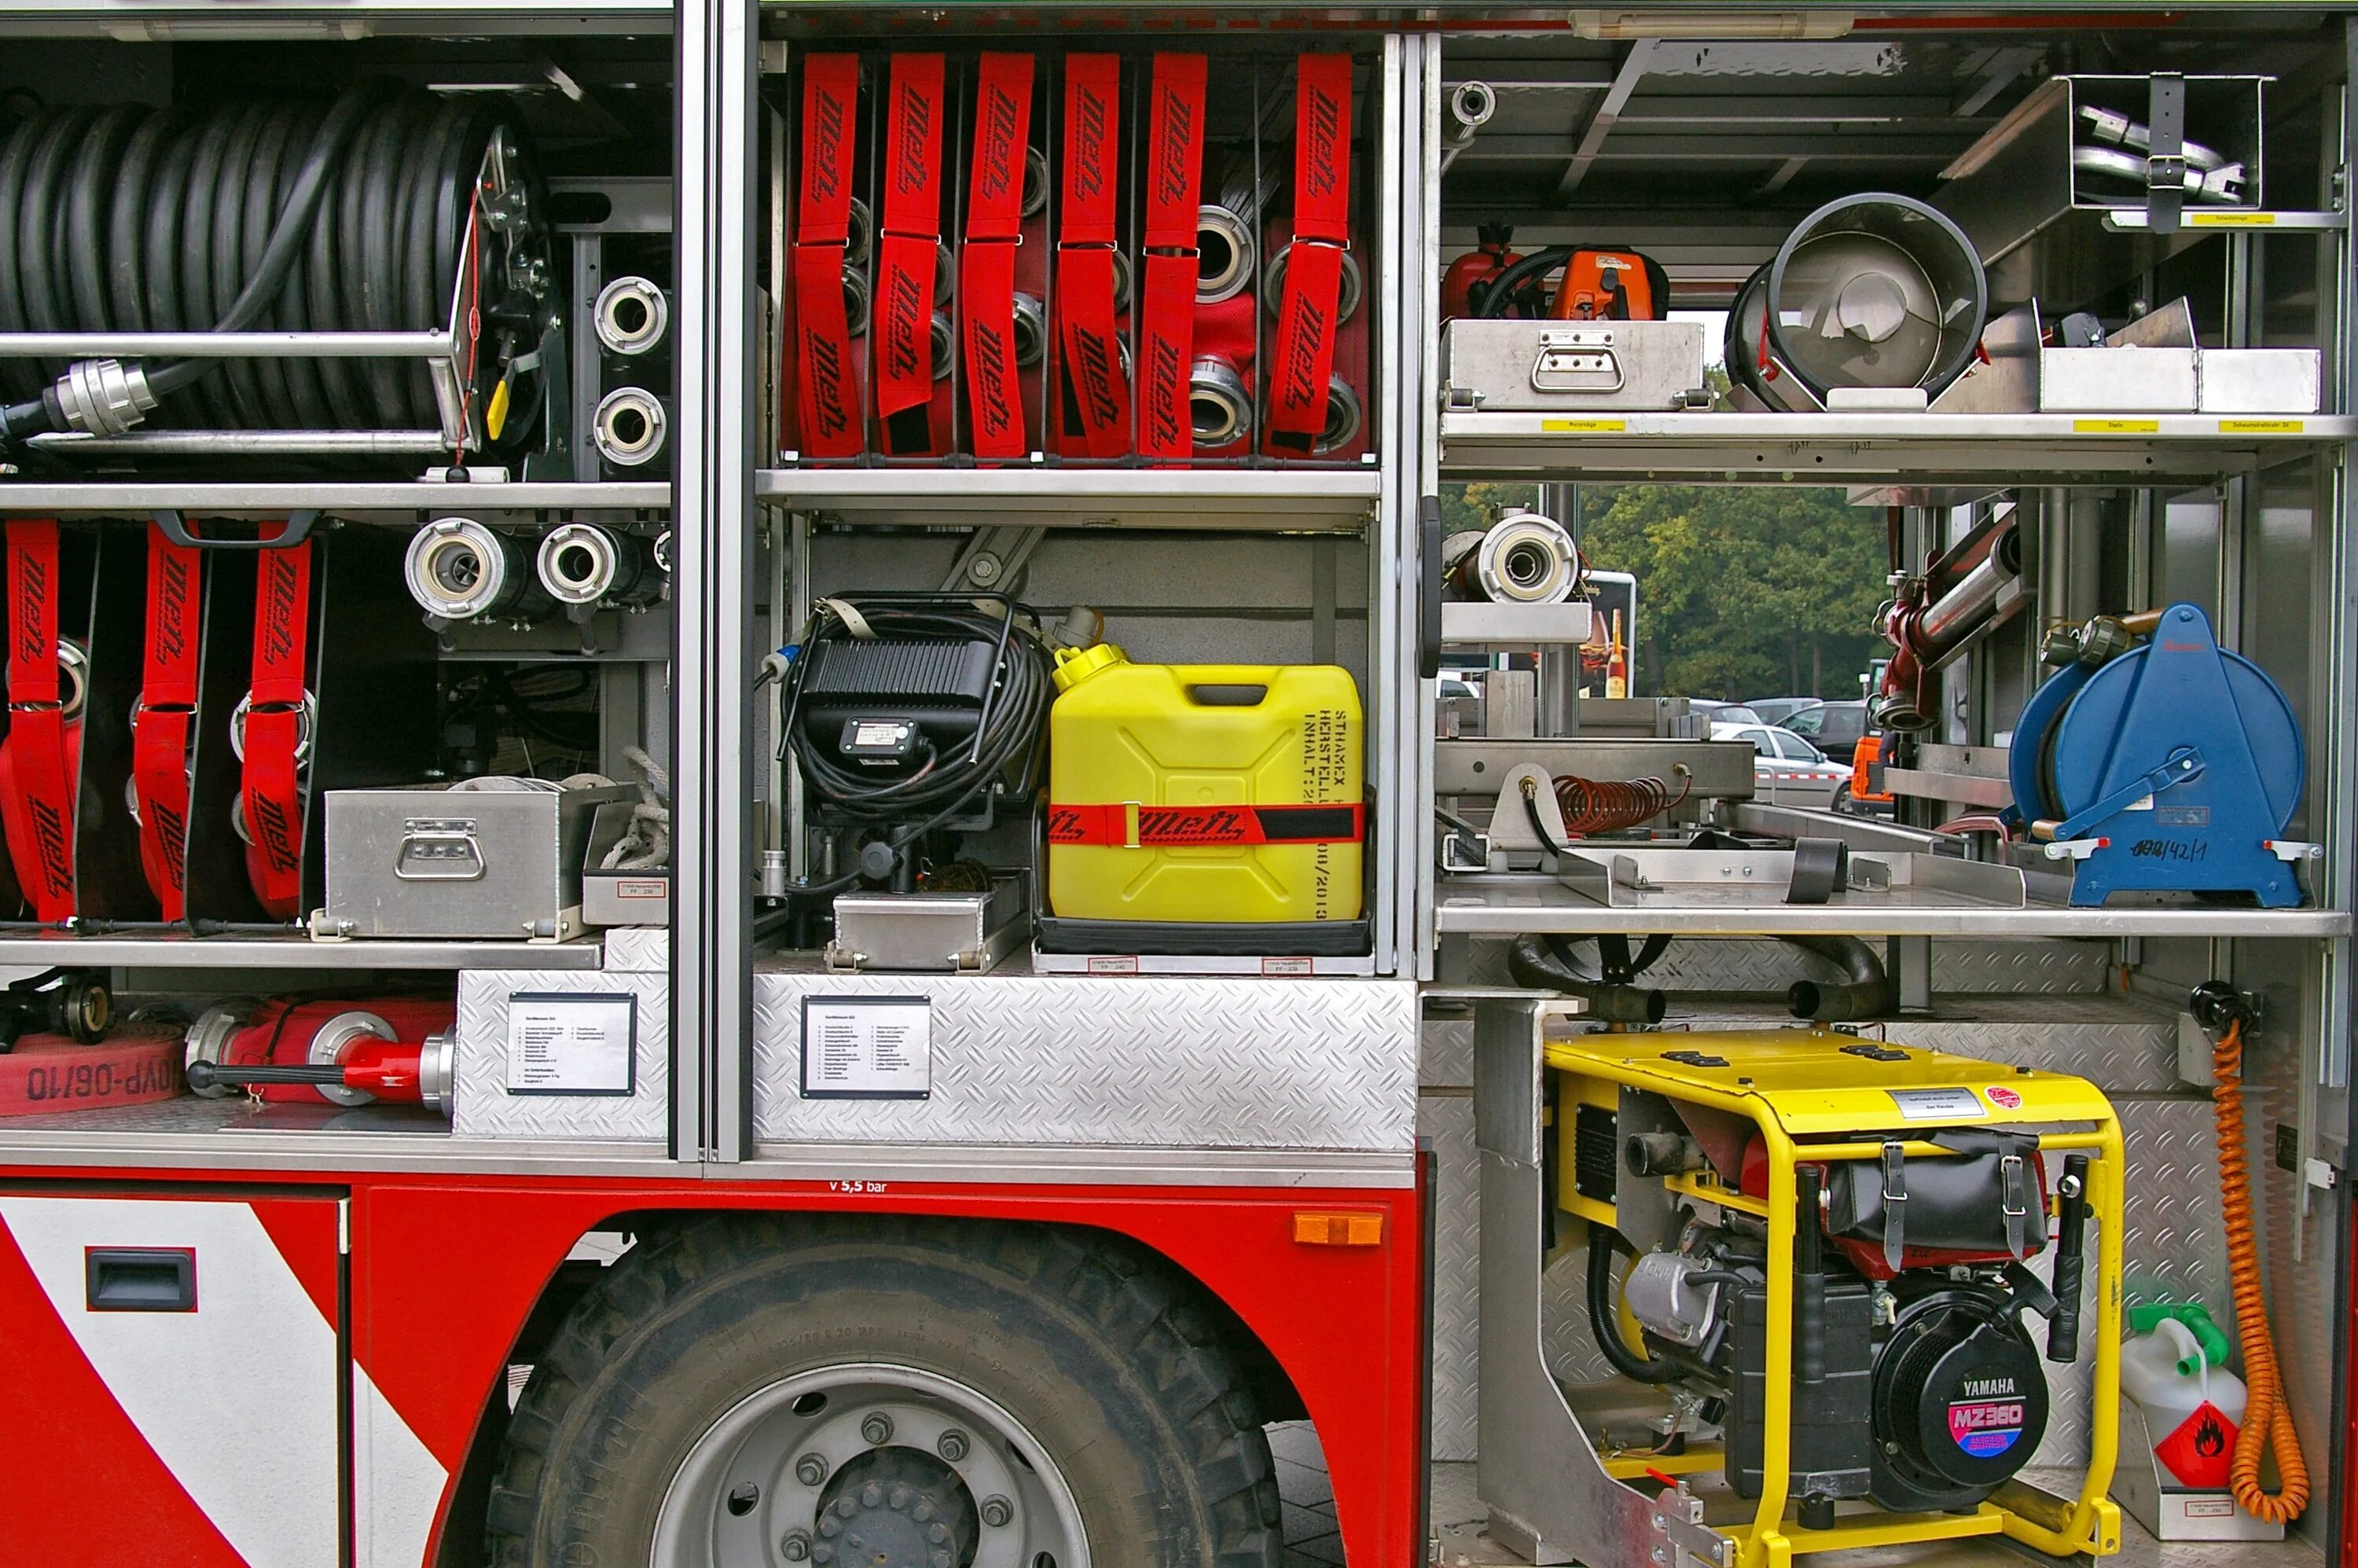 Время ремонта пожарного автомобиля. ПТВ пожарной машины. ПТВ снаряжения для пожарной машины. Оснащение пожарного автомобиля. Пожарно-техническое вооружение и оборудование.